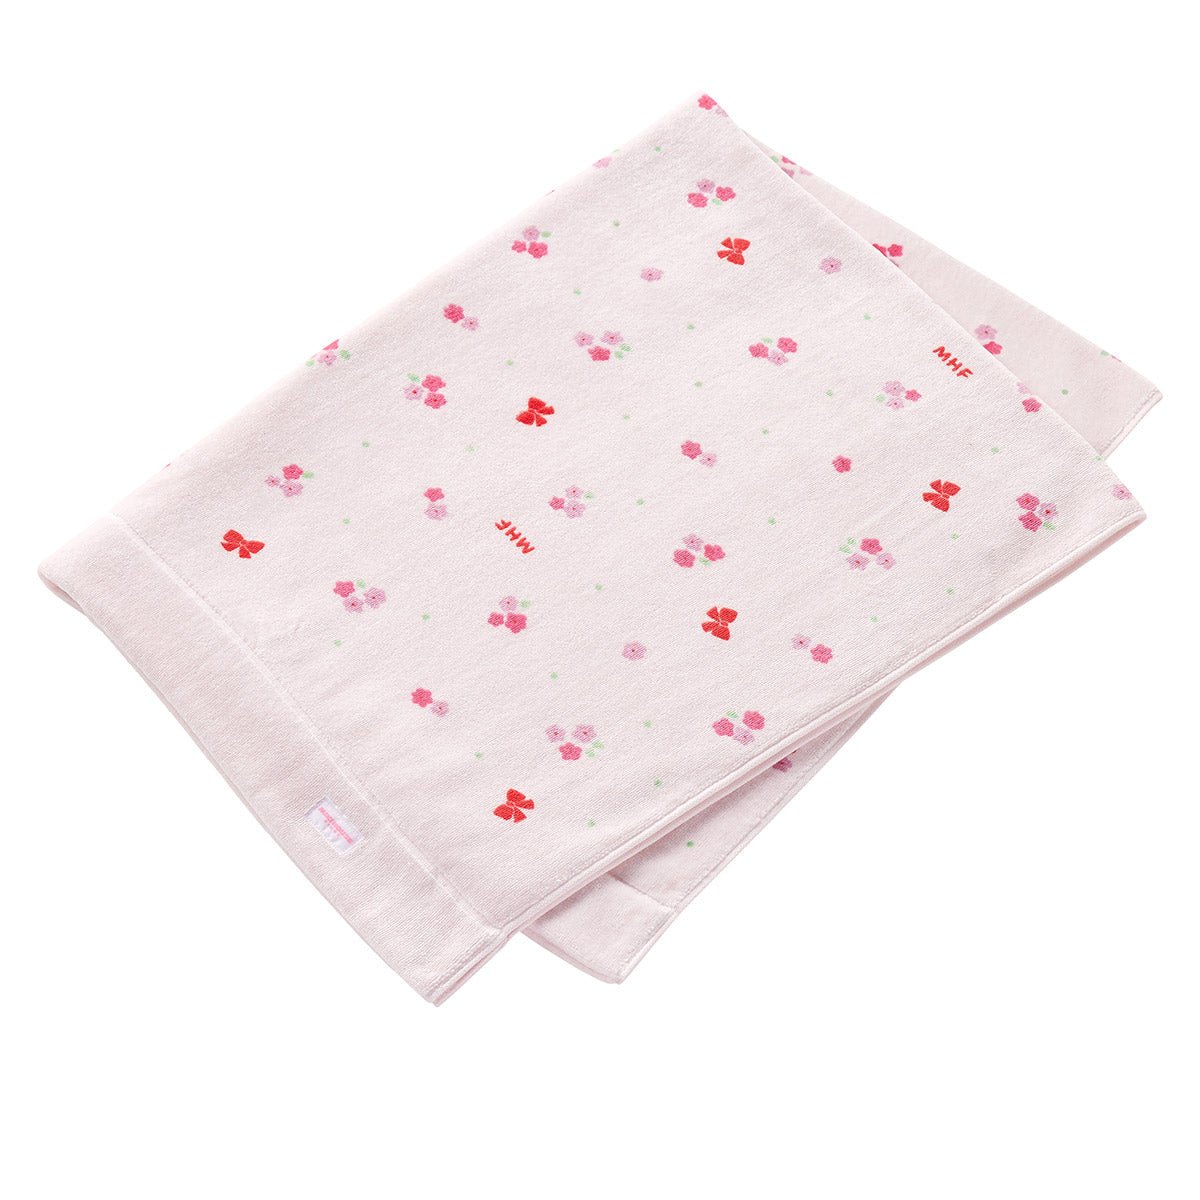 Floral Fun Towel Blanket - 46-8270-788-08-F